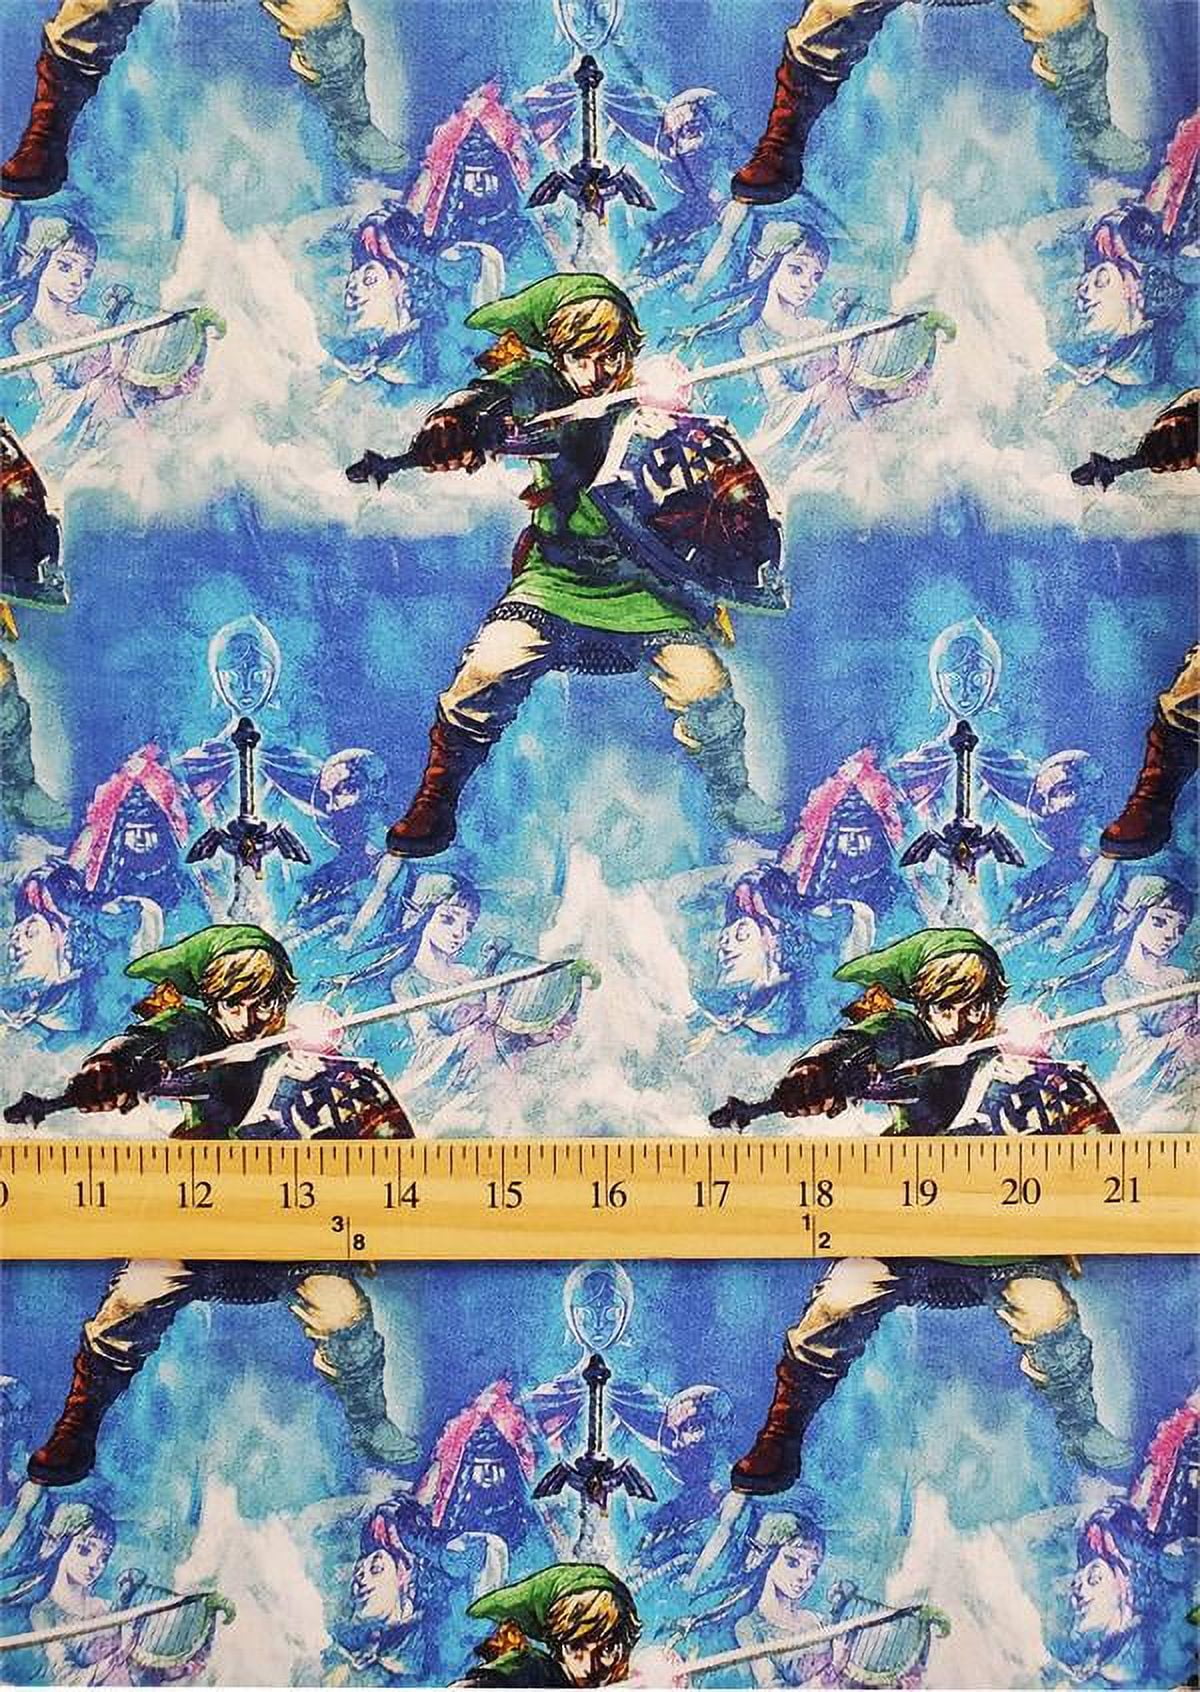 100+] Zelda Wallpapers